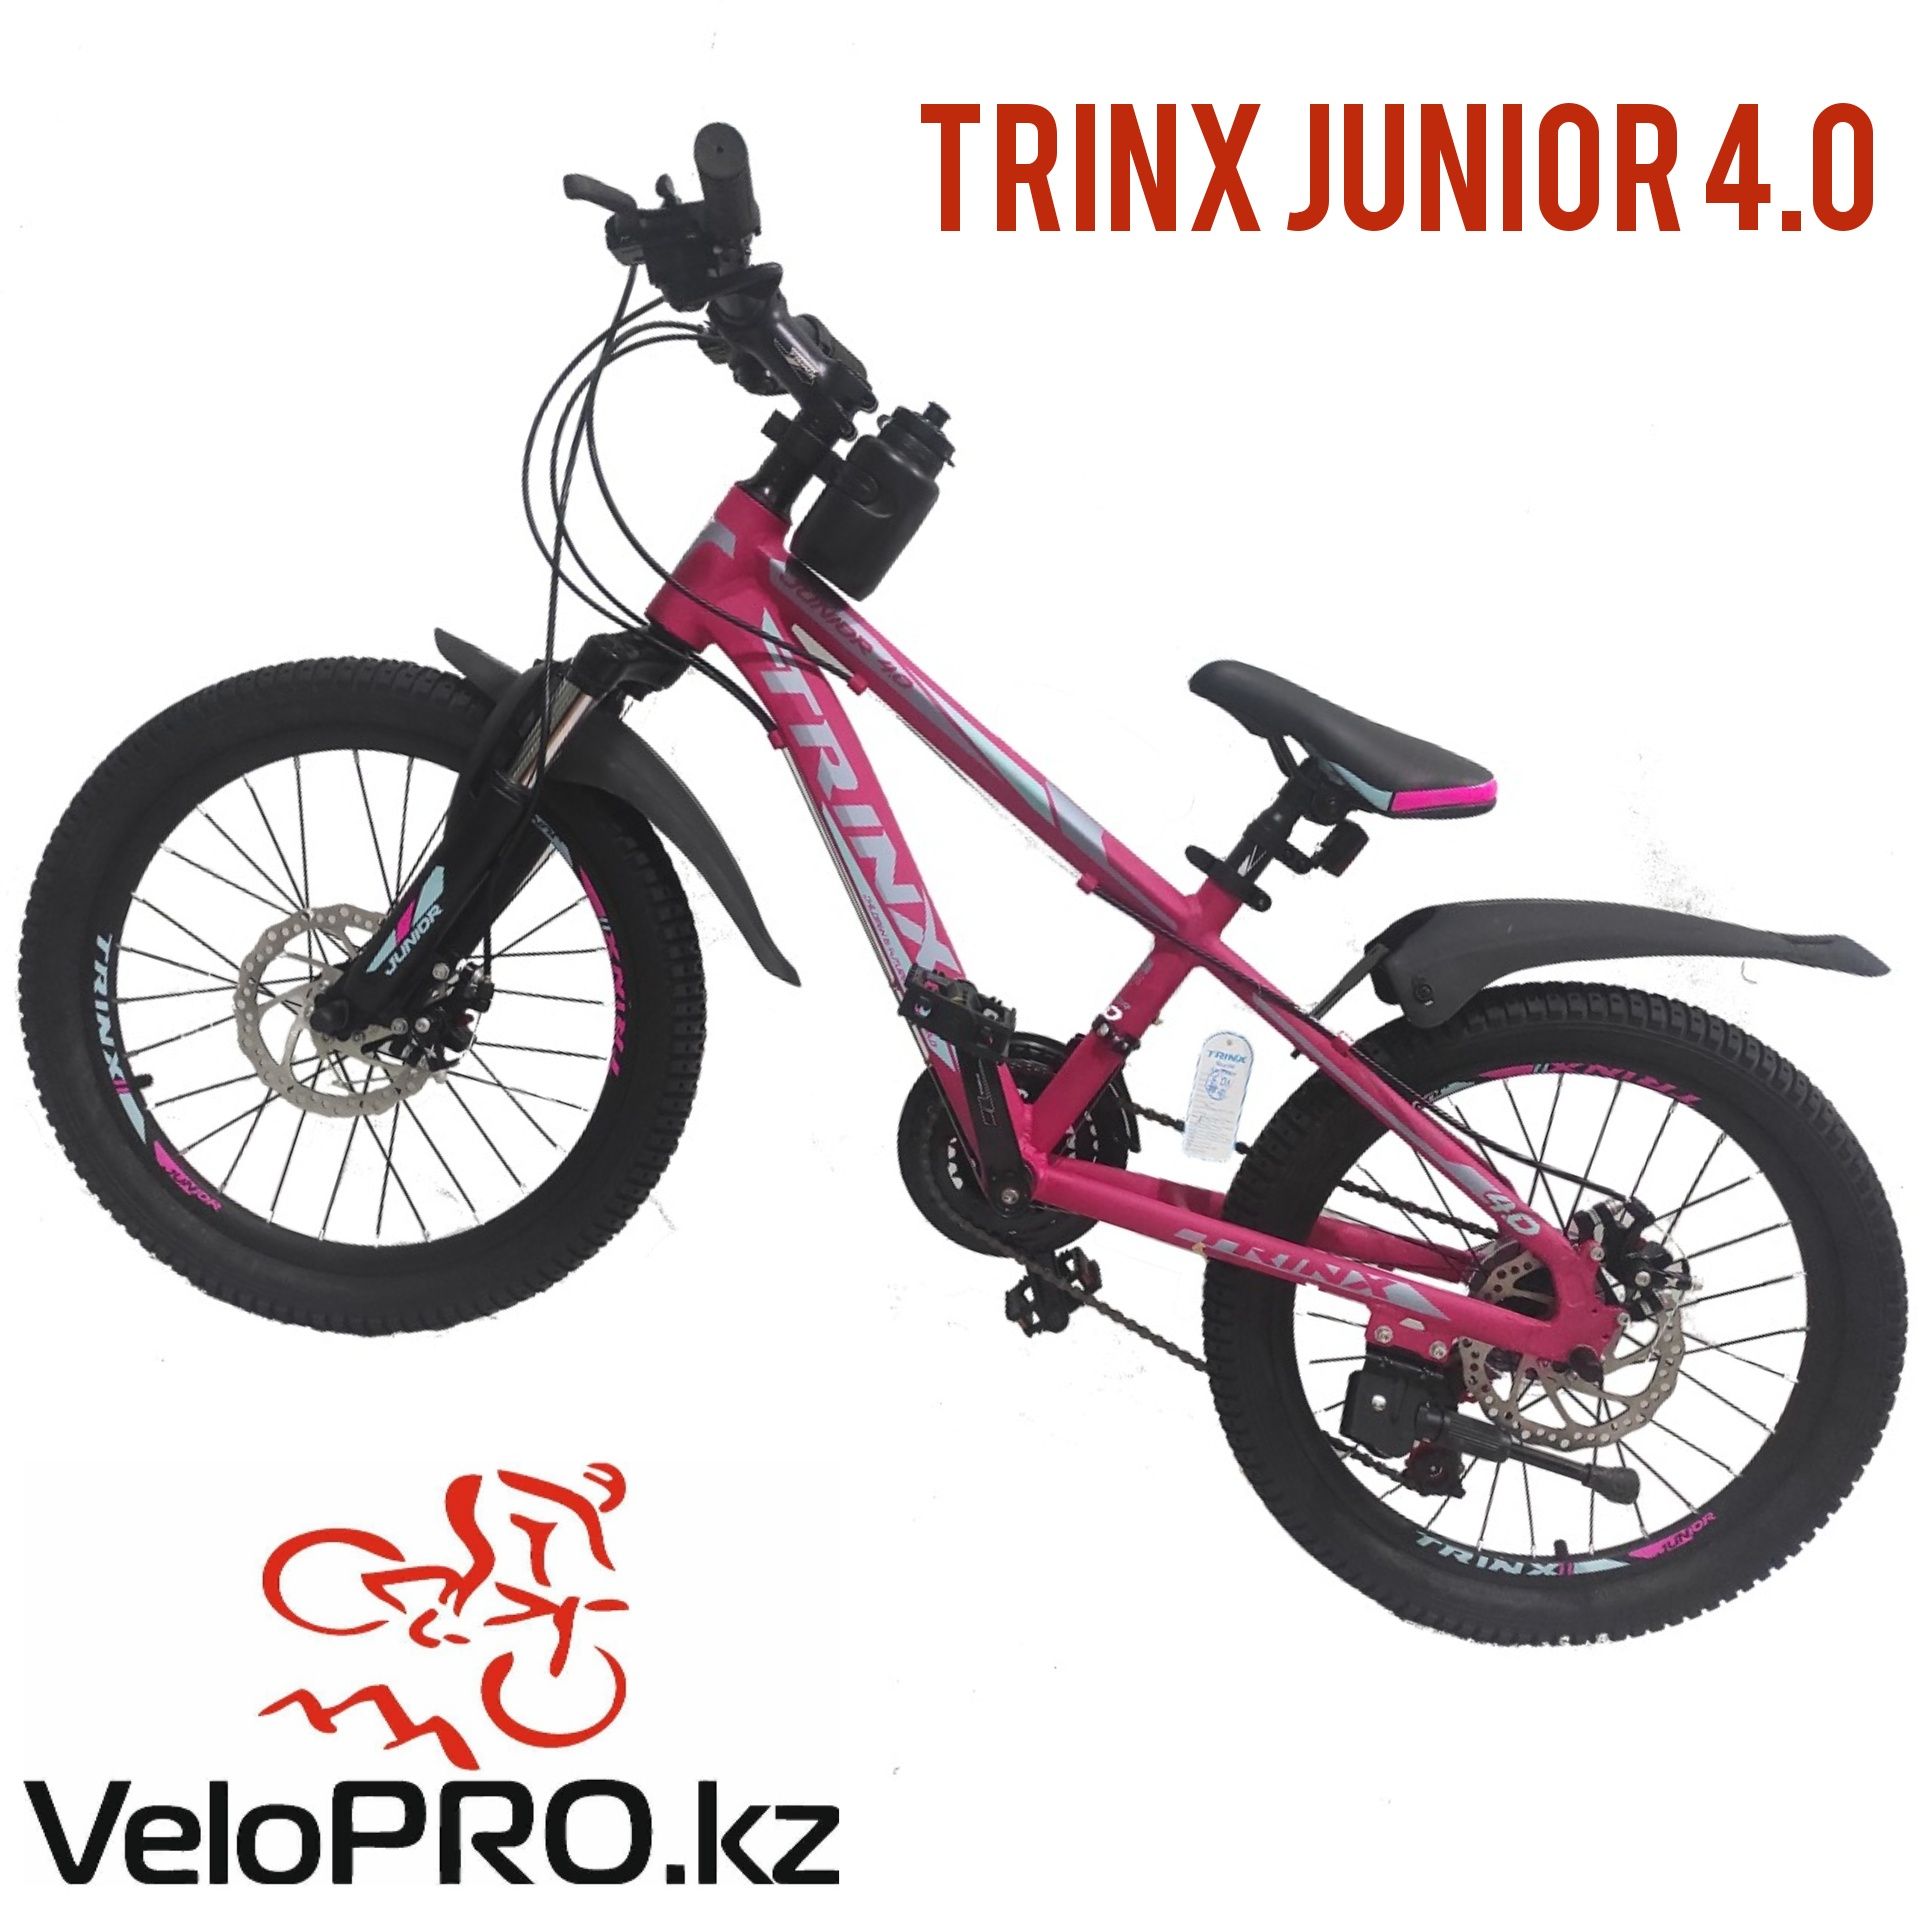 Велосипед Trinx junior, Tempo,m258,m139,m500. Рассрочка. Гарантия.